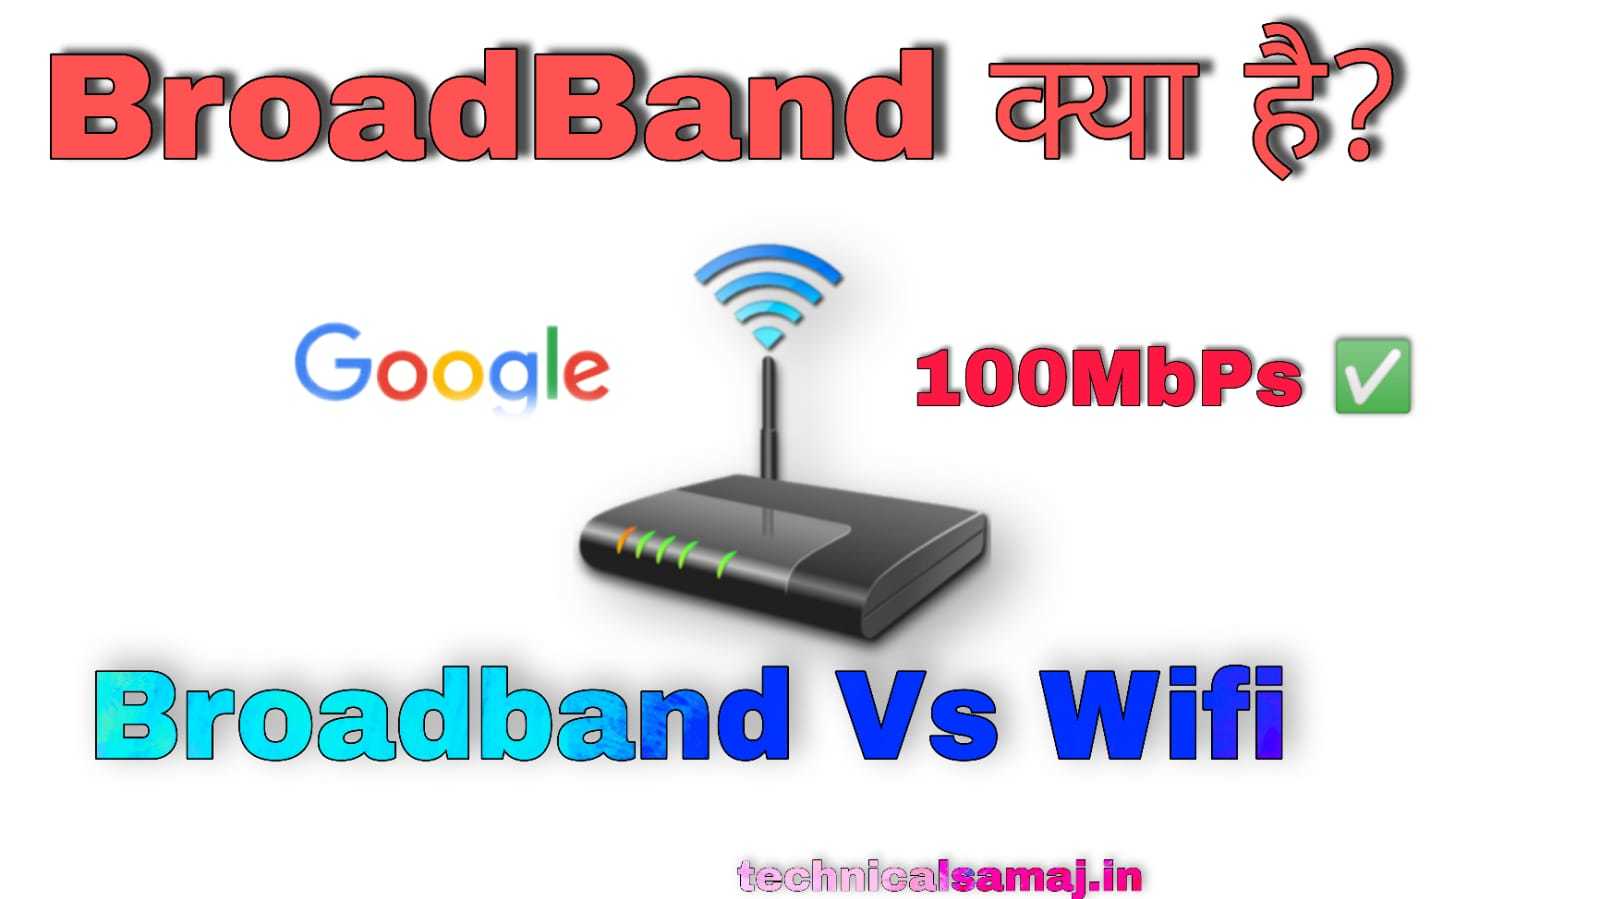 Broadband Meaning in Hindi,ब्रॉडबैंड क्या है कैसे काम करता है हिंदी में,ब्रॉडबैंड कैसे काम करता है?,ब्रॉडबैंड के प्रकार,Broadband Meaning in marathi